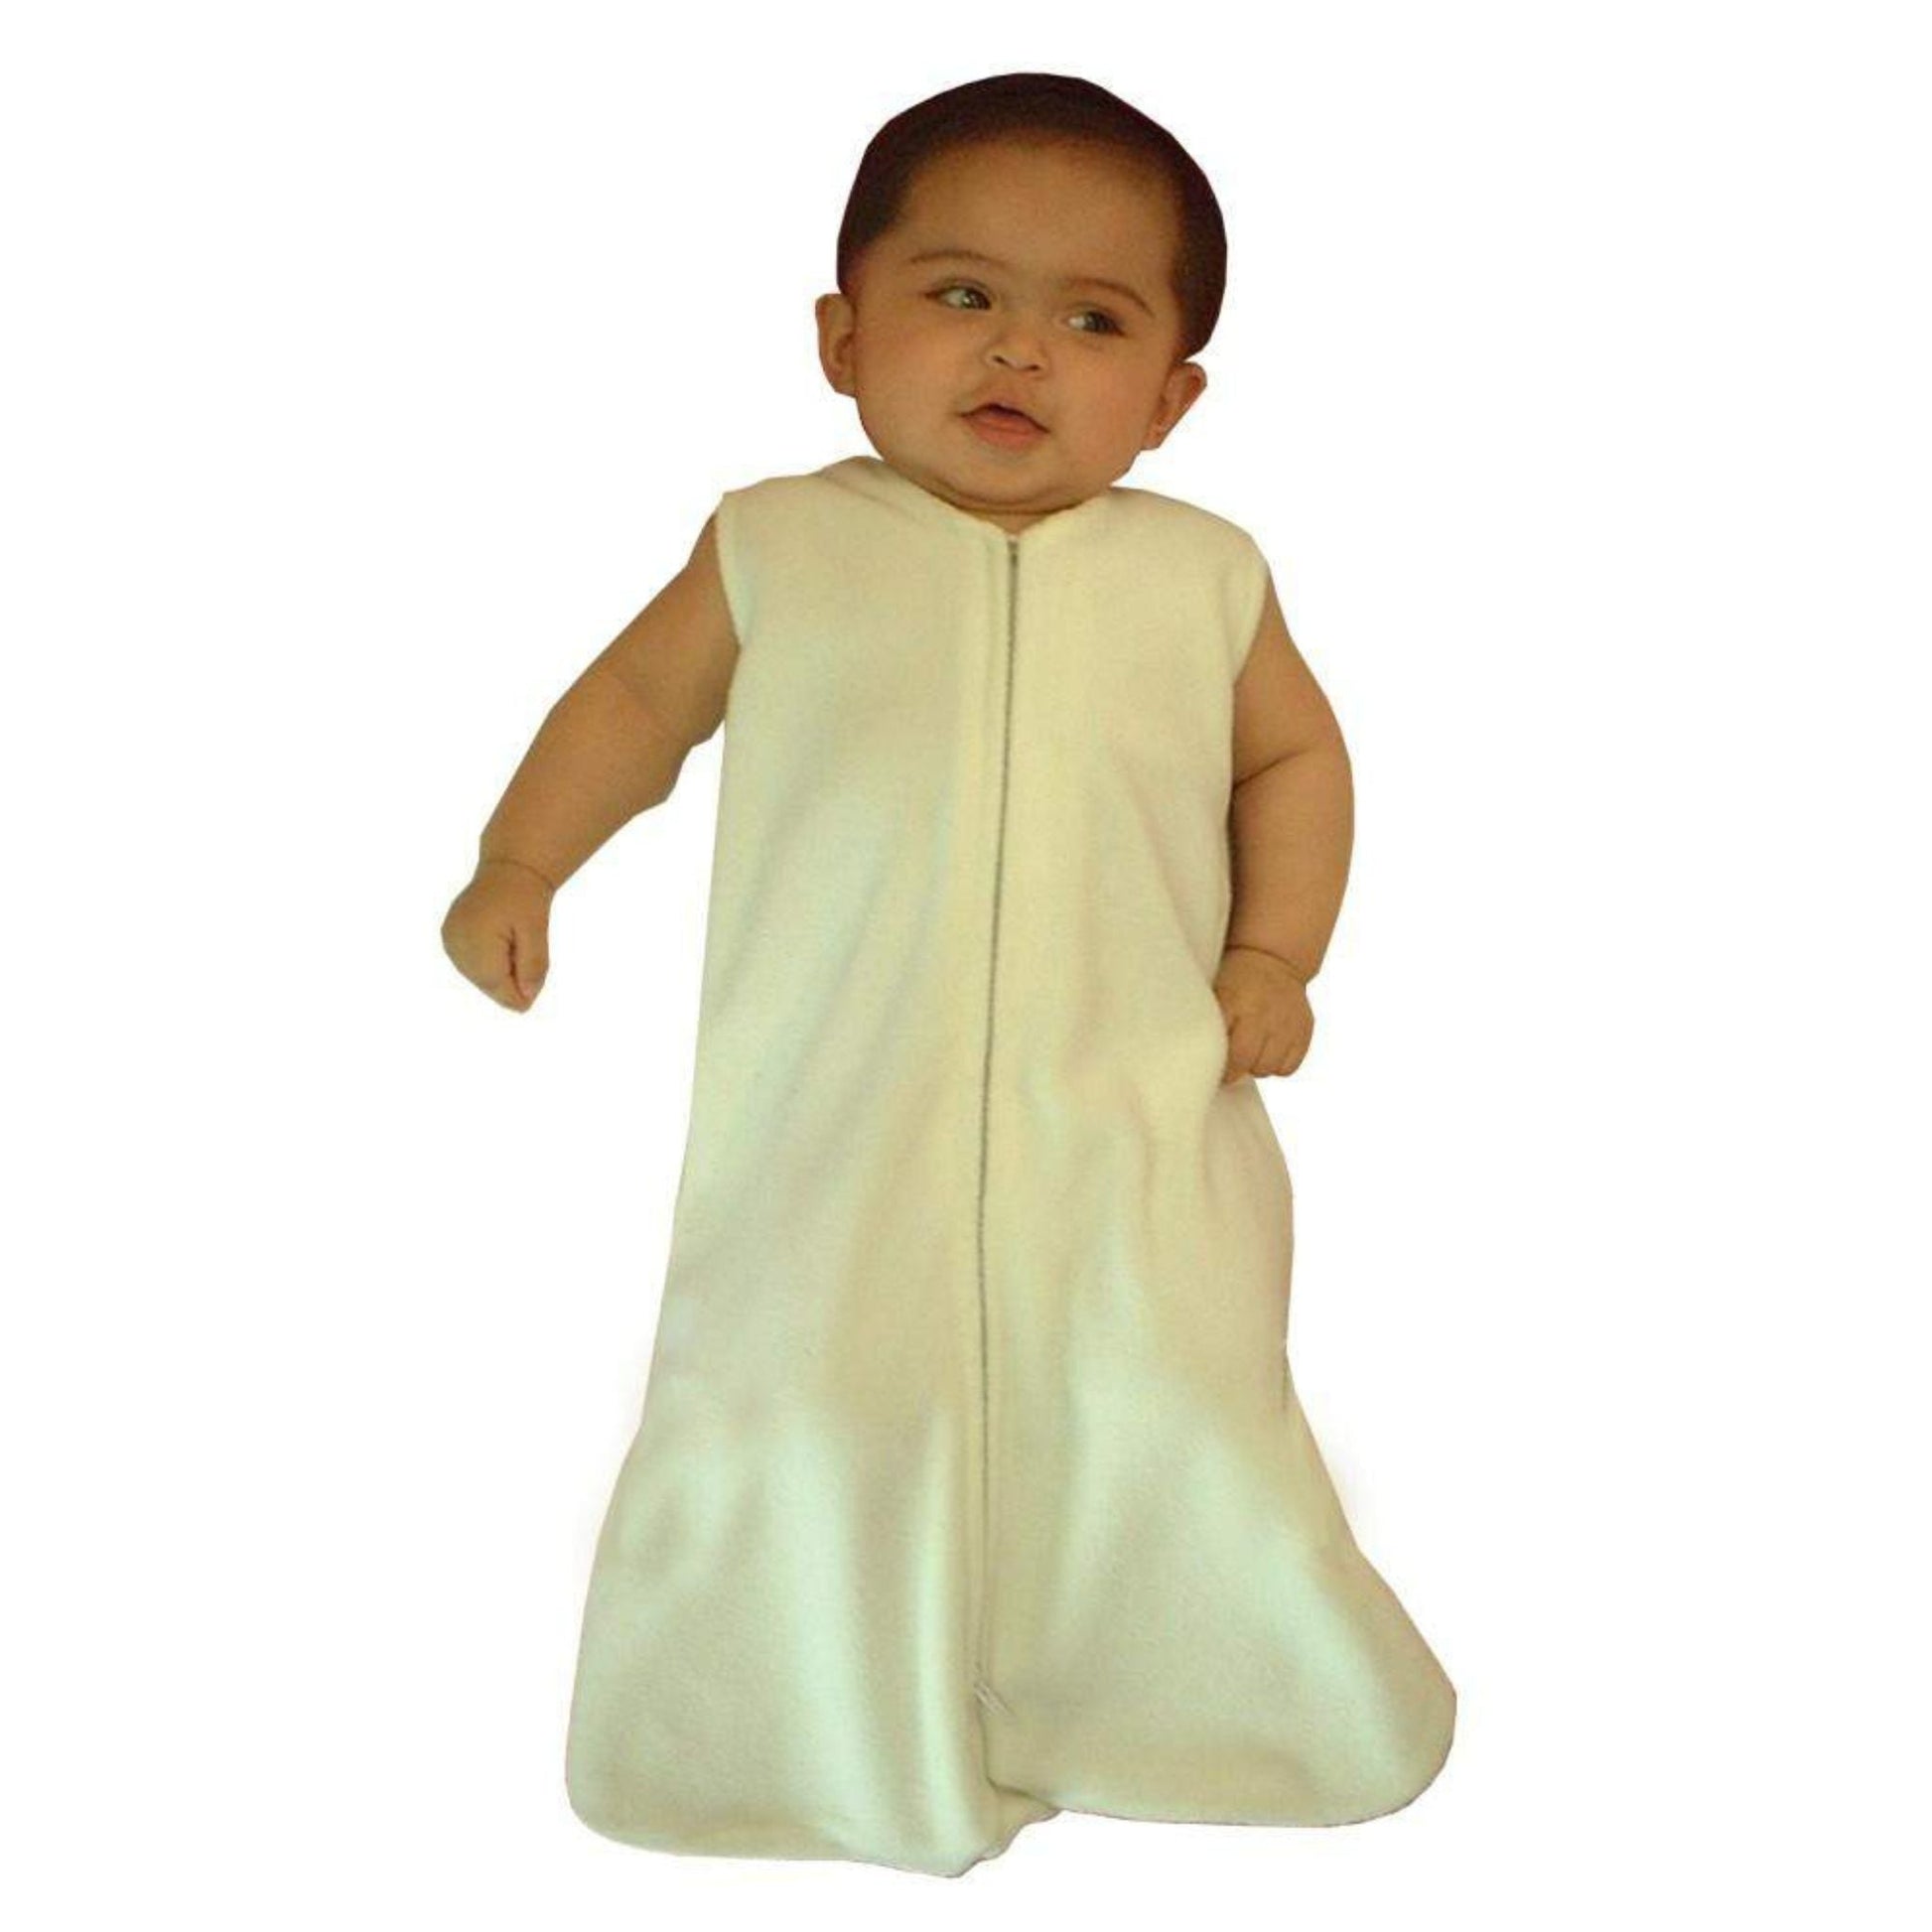 Fleece Napsack Wearable Blanket-Bambini-Baby Clothes, Baby Swaddle Blanket